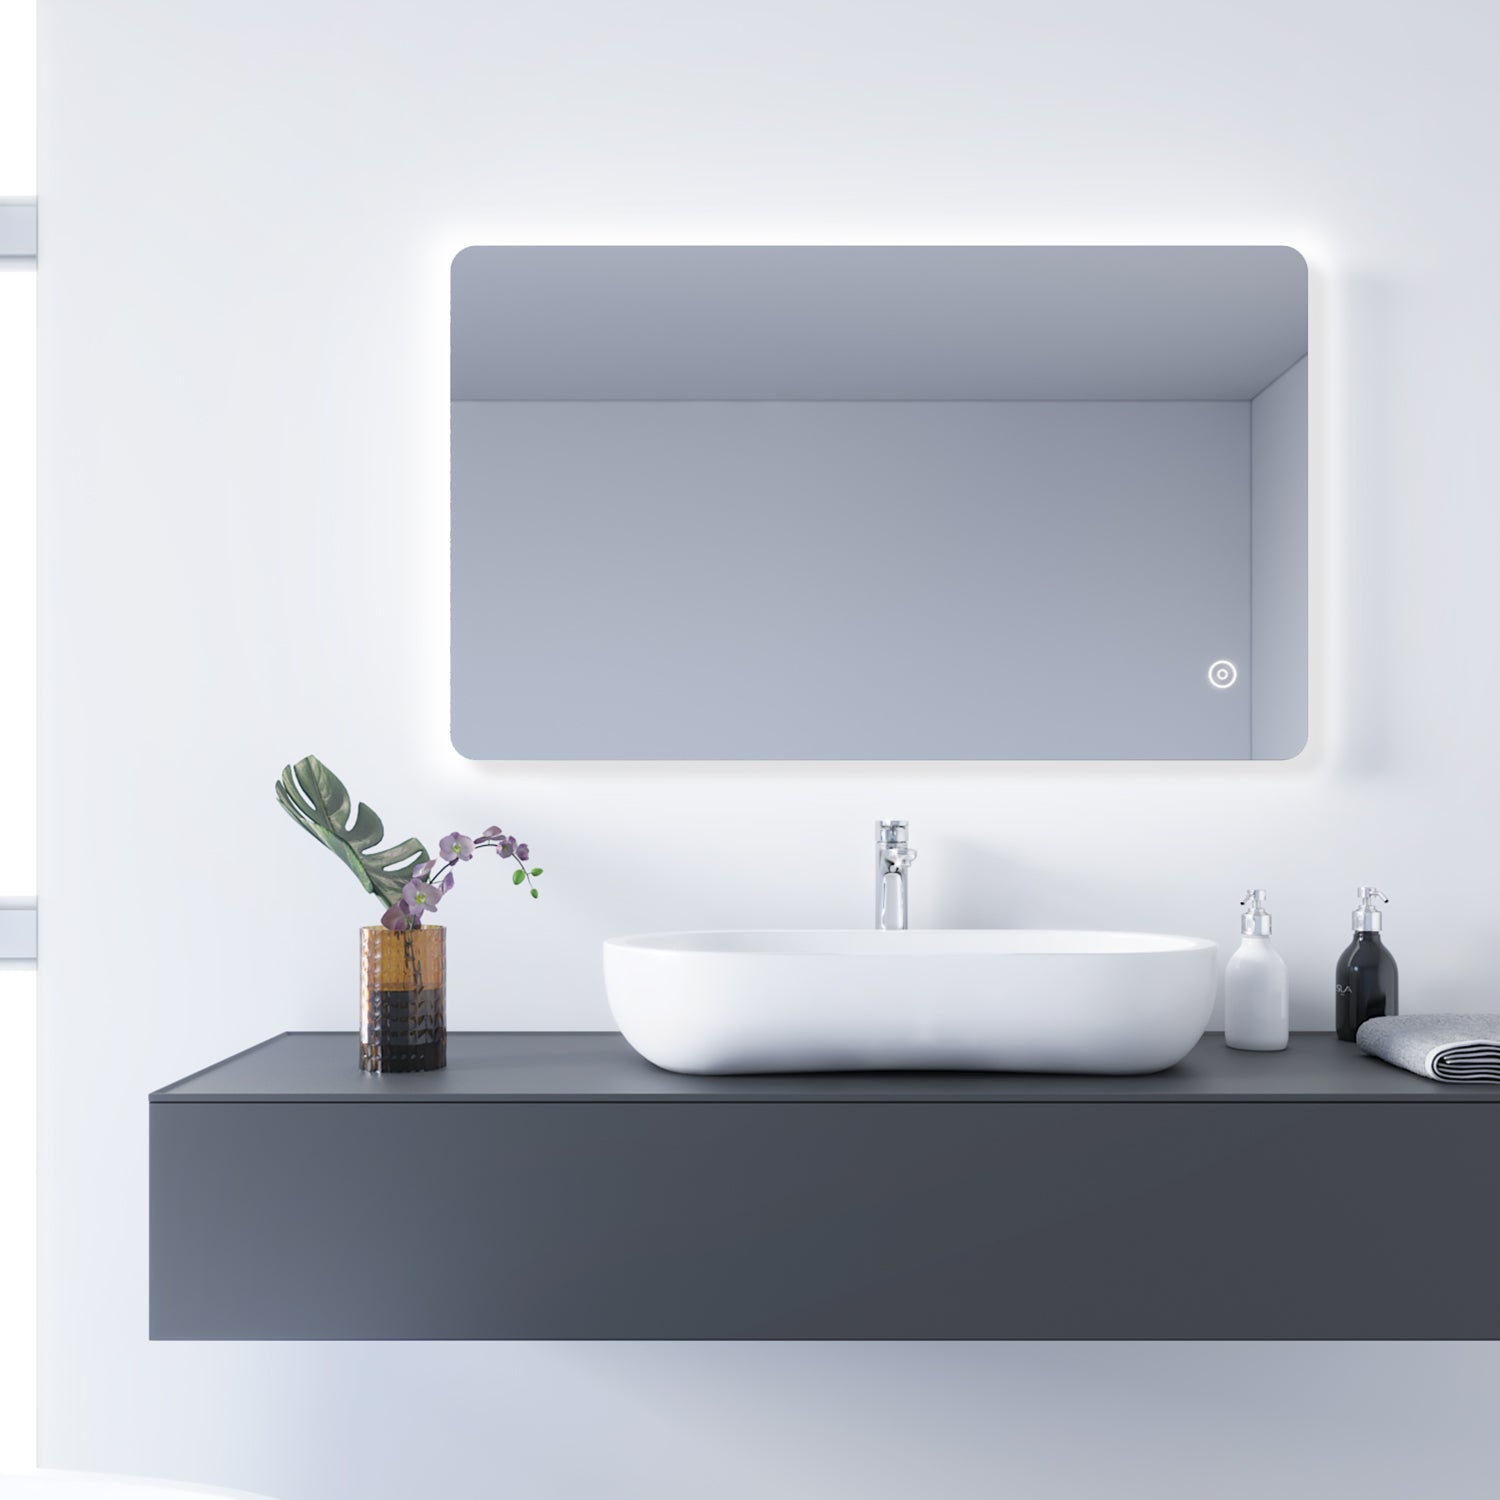 Badezimmer LED Spiegel Badspiegel mit Beleuchtung Touchschalter 100x60cm GTBM0816